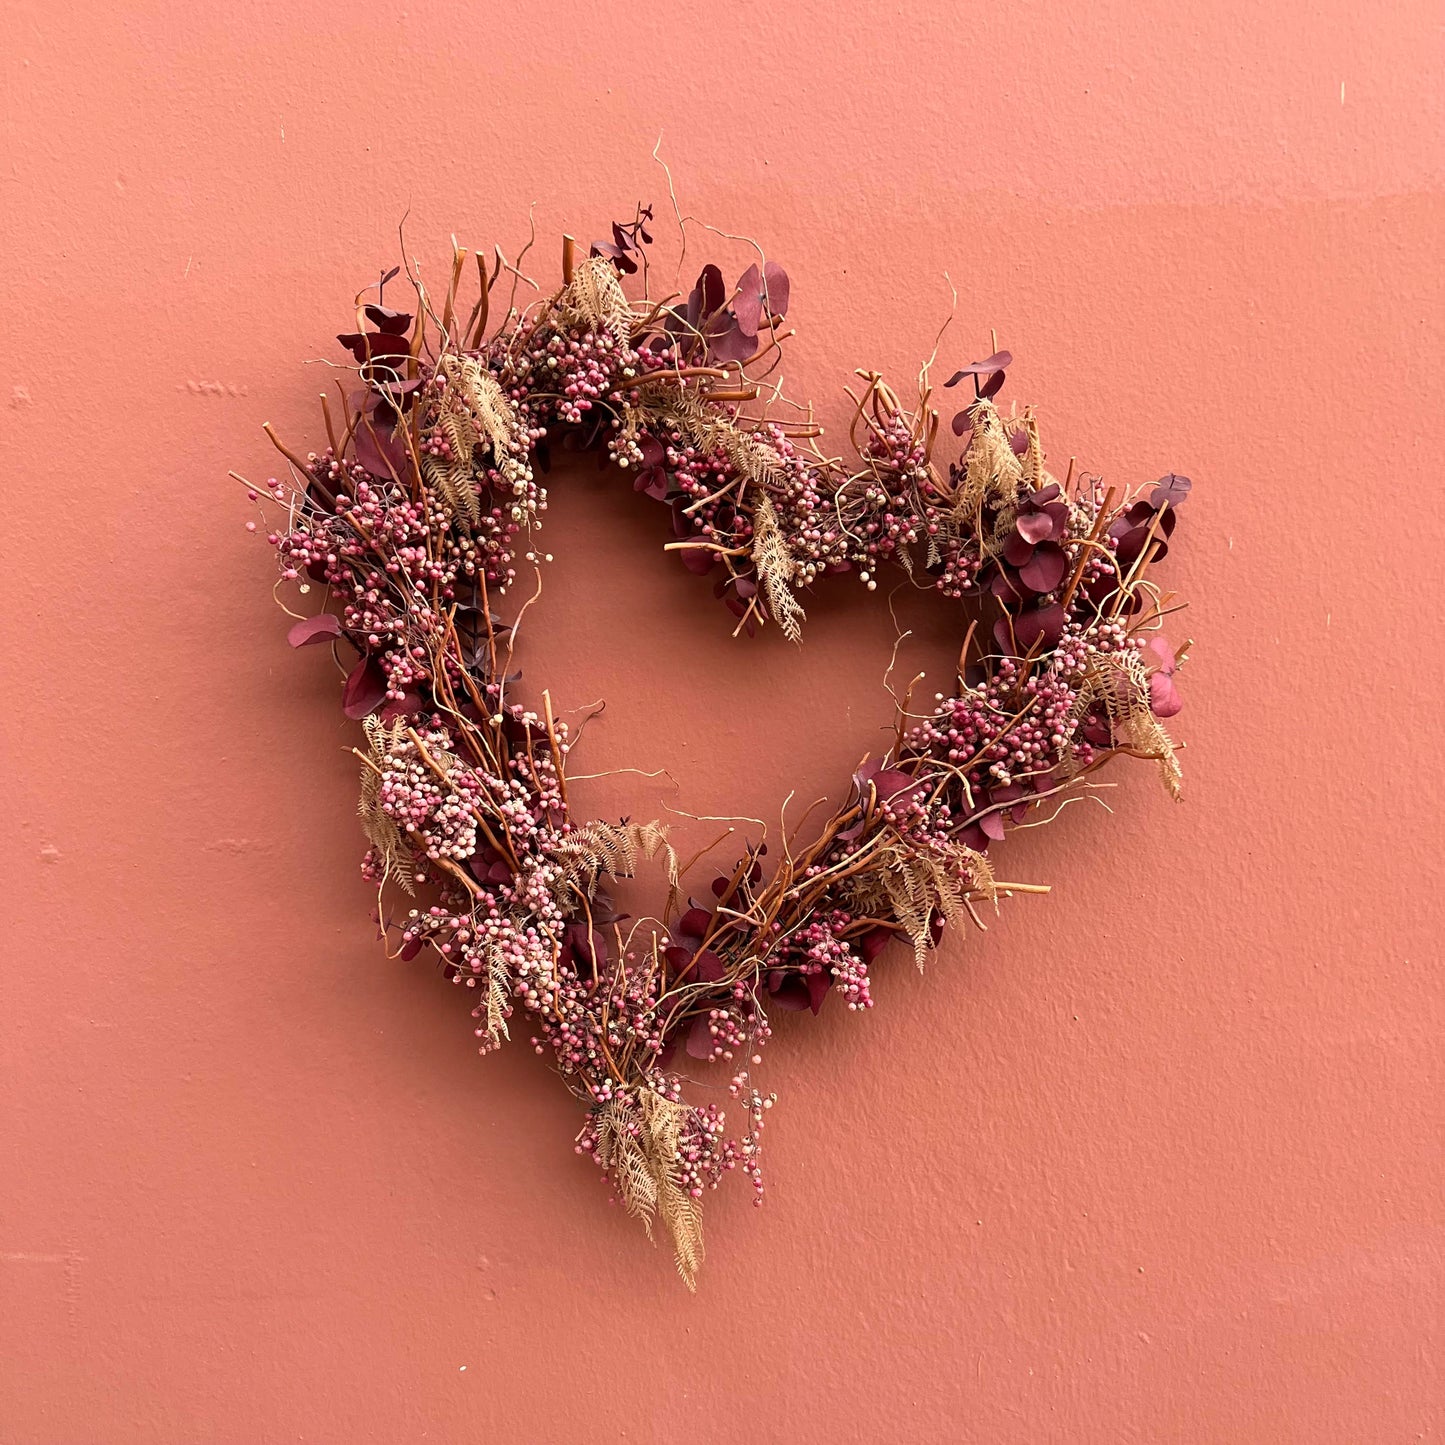 Love You Wreath - The English Garden